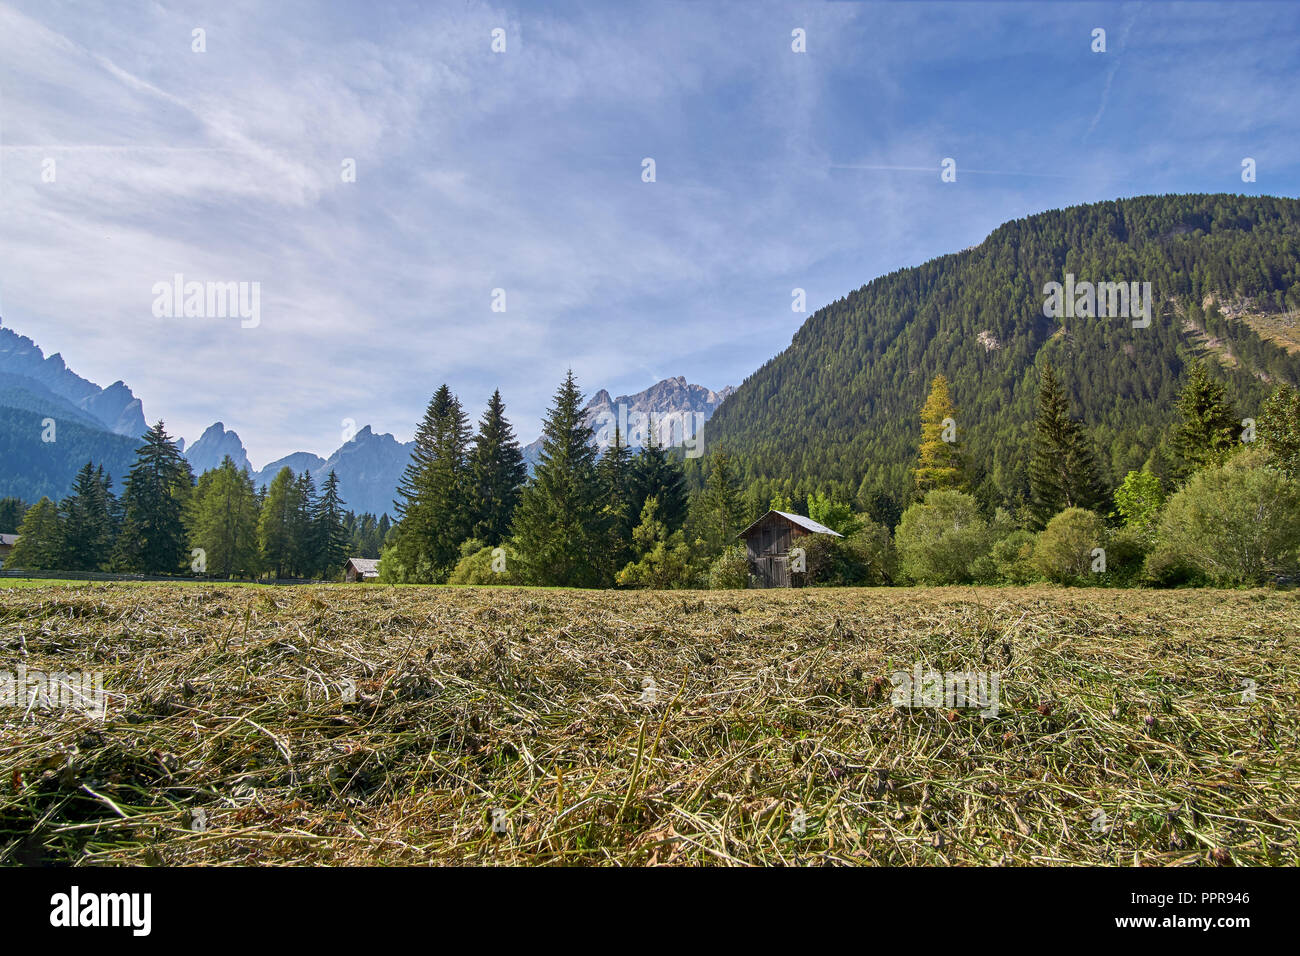 Fraîchement tondue un grass meadow et farmer's hut près de Bad Moos, avec vue sur les sommets des Dolomites de Sexten dans l'Fischleintal (Val Fiscalina), Italie Banque D'Images